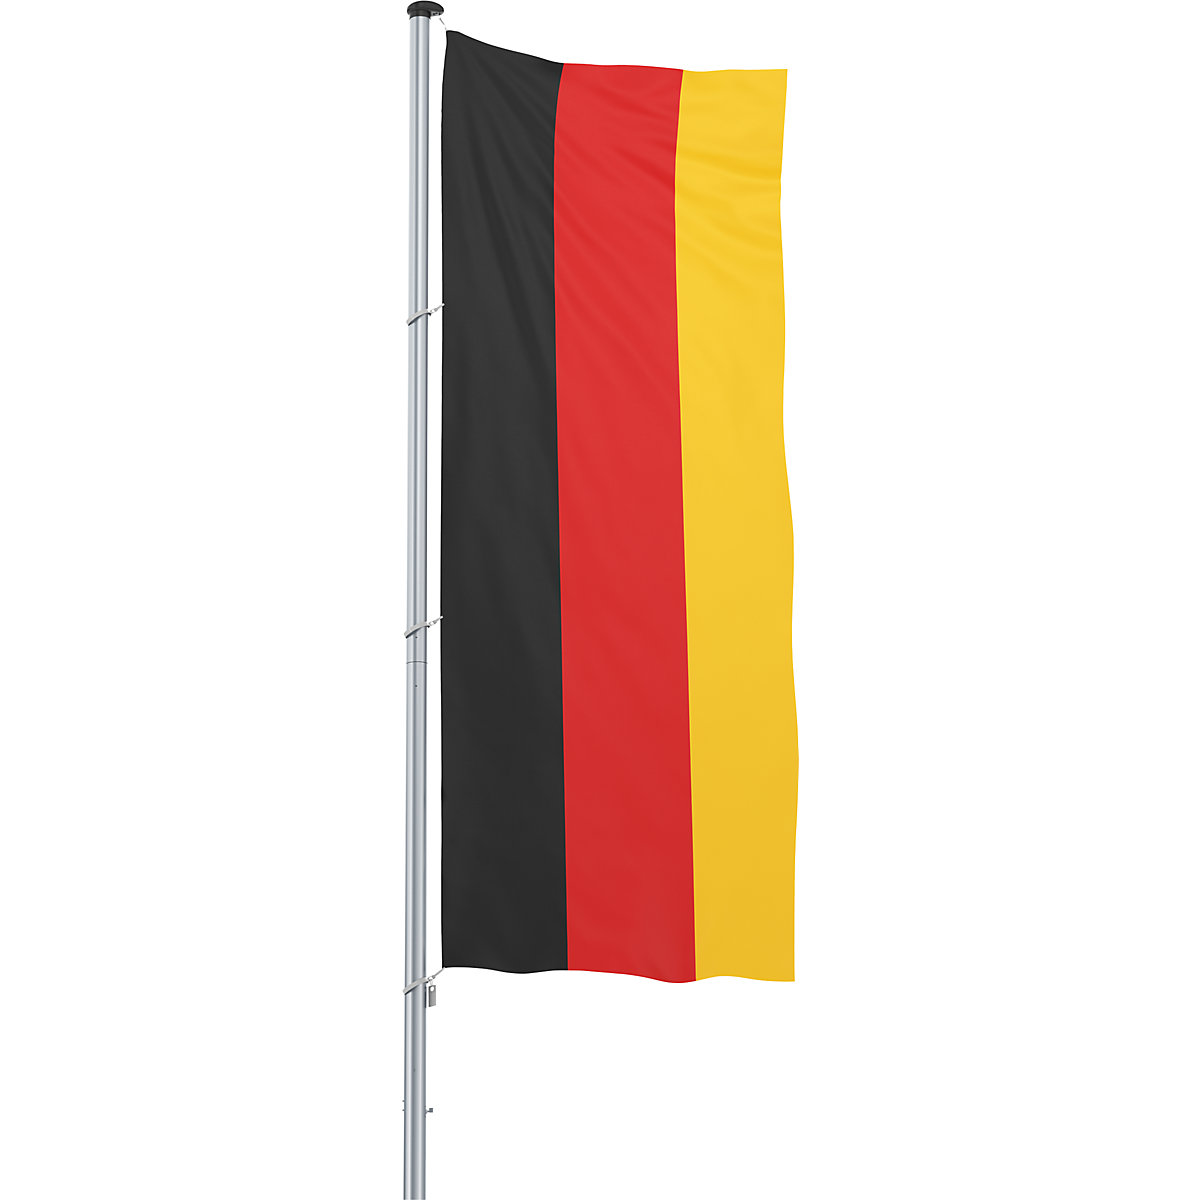 Mannus – Bandera para izar/bandera del país, formato 1,2 x 3 m, Alemania